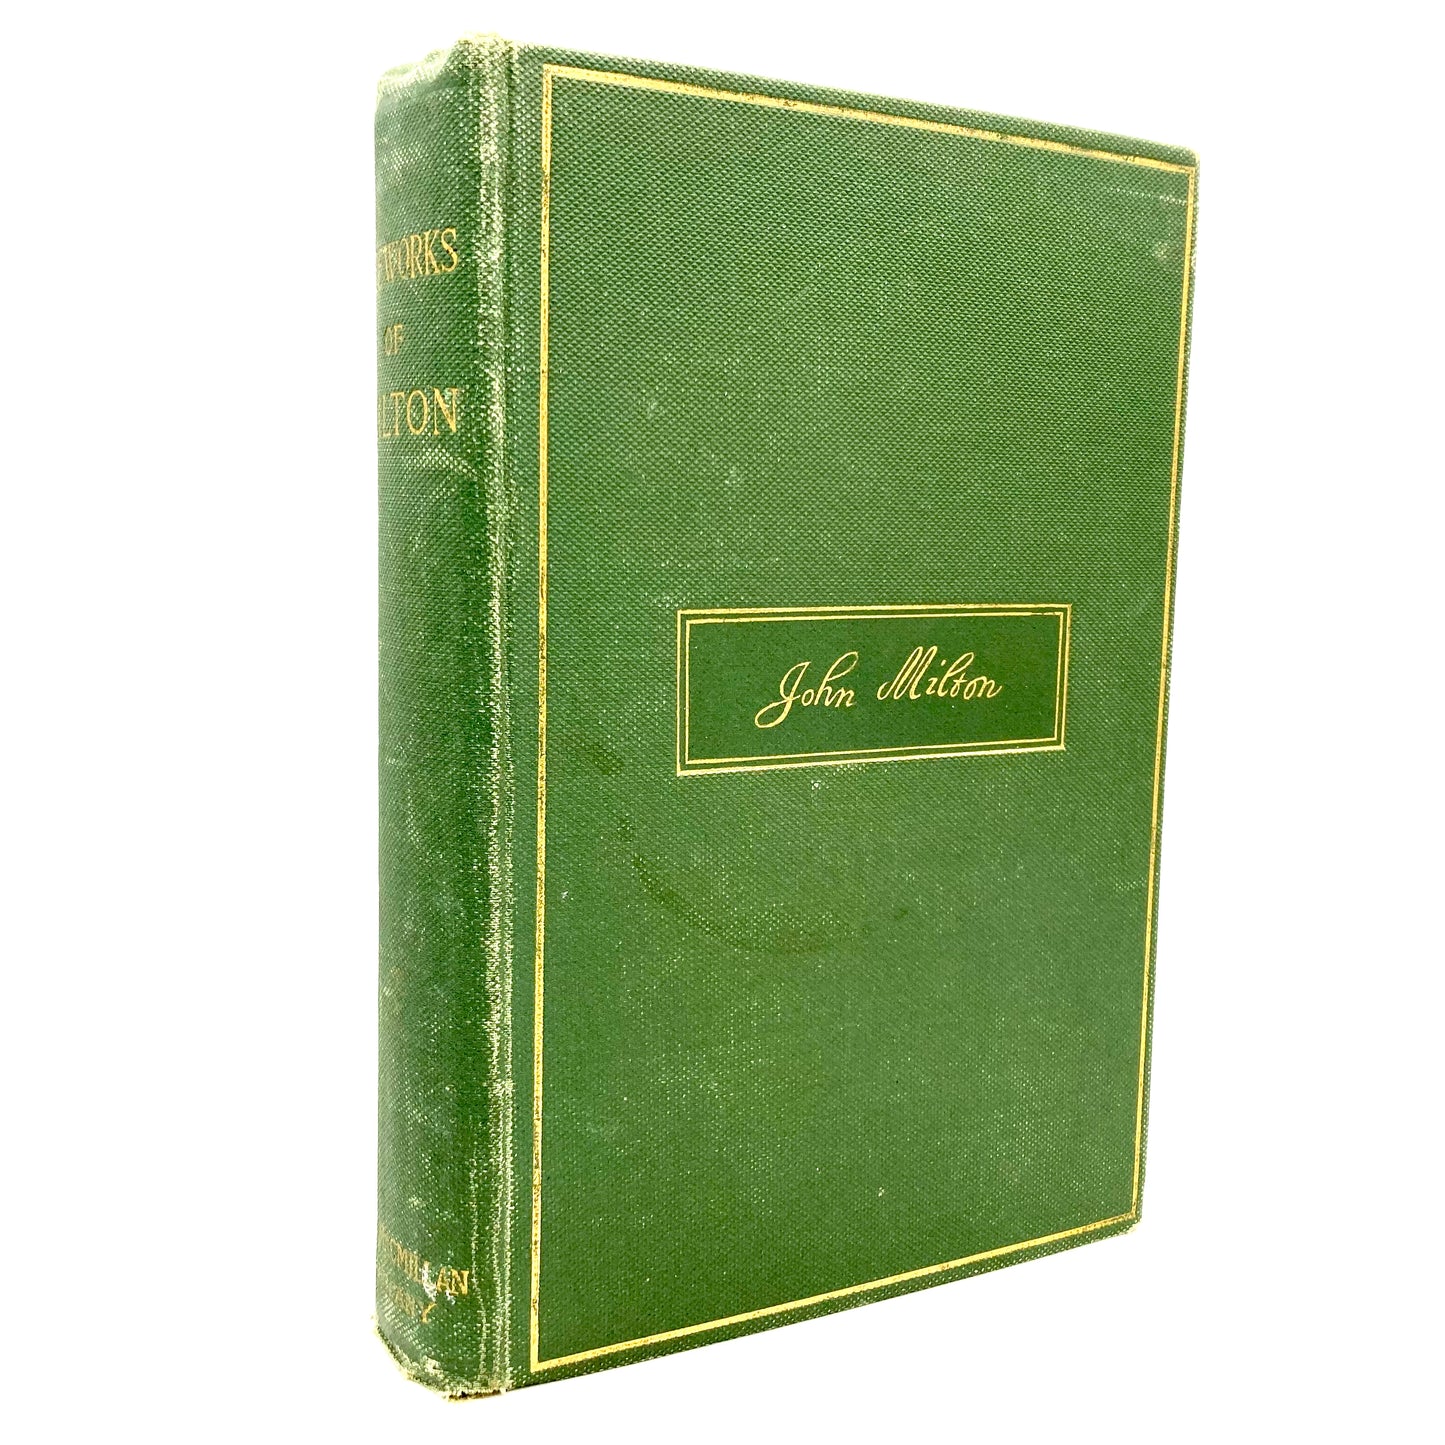 MILTON, John "The Poetical Works" [Macmillan, 1906] - Buzz Bookstore